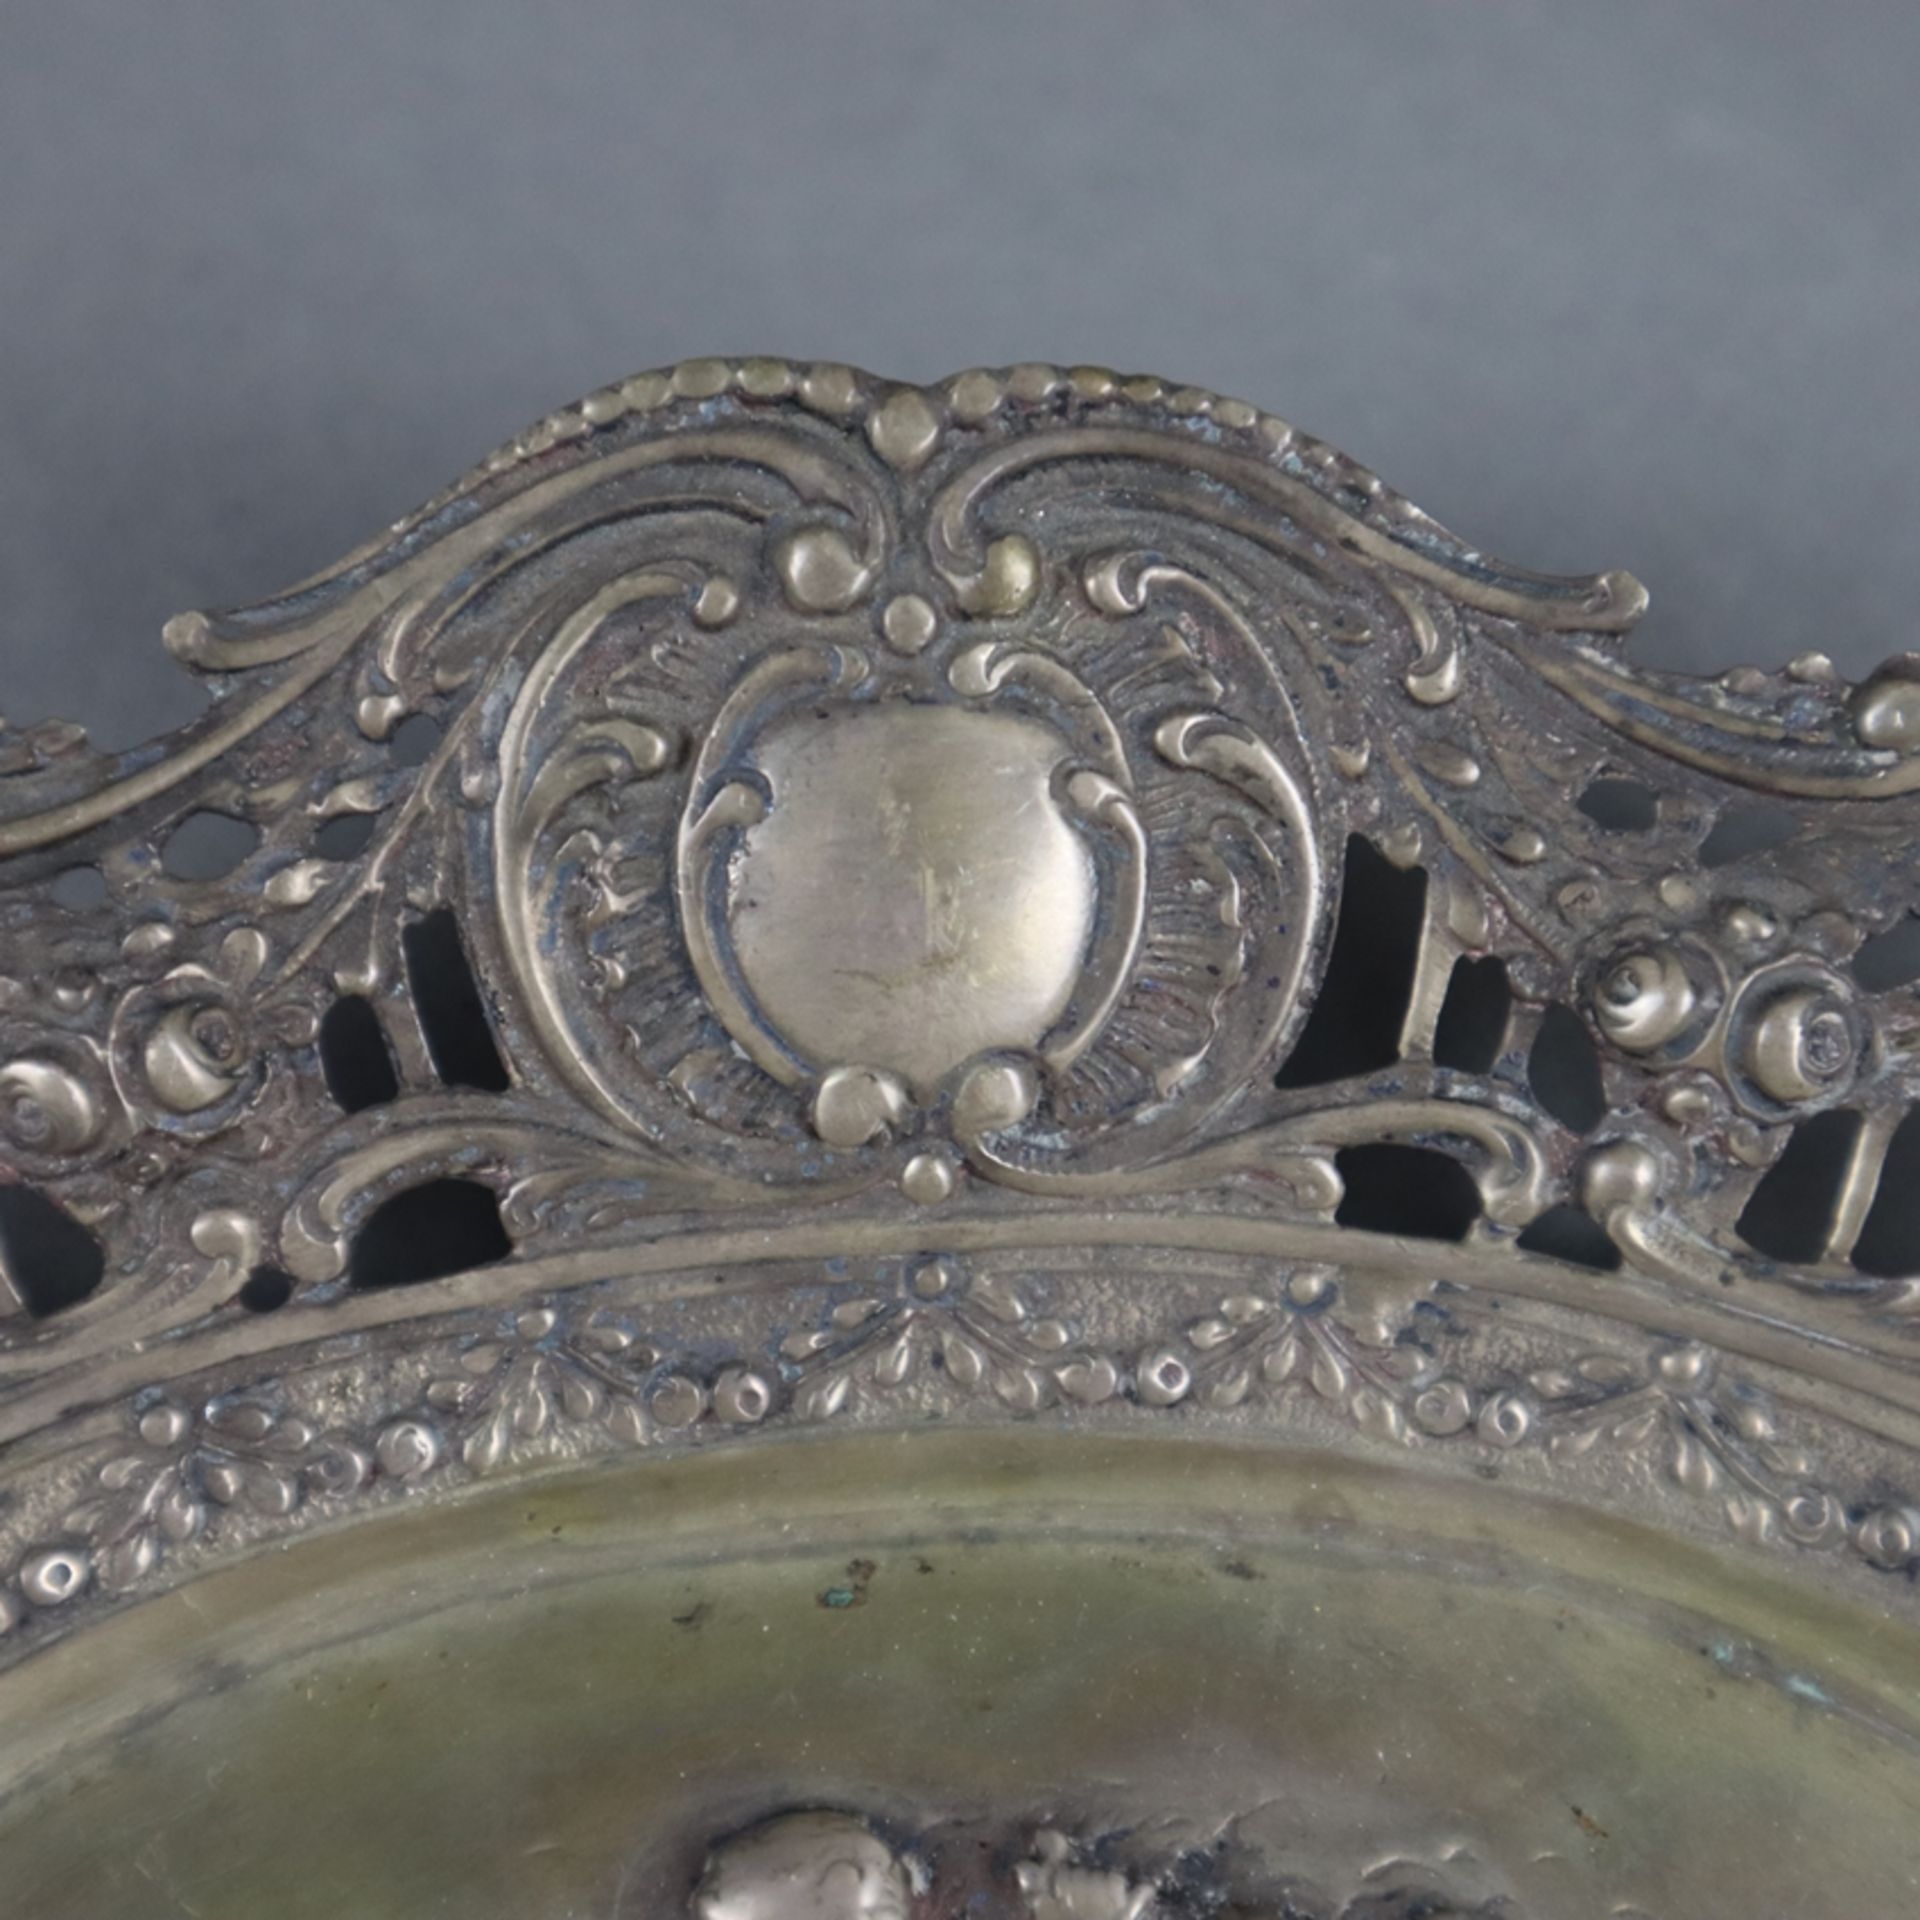 Ovale Korbschale - 800er Silber, gestempelt, im Spiegel Puttendekor im Relief, durchbrochene Fahne - Bild 4 aus 6